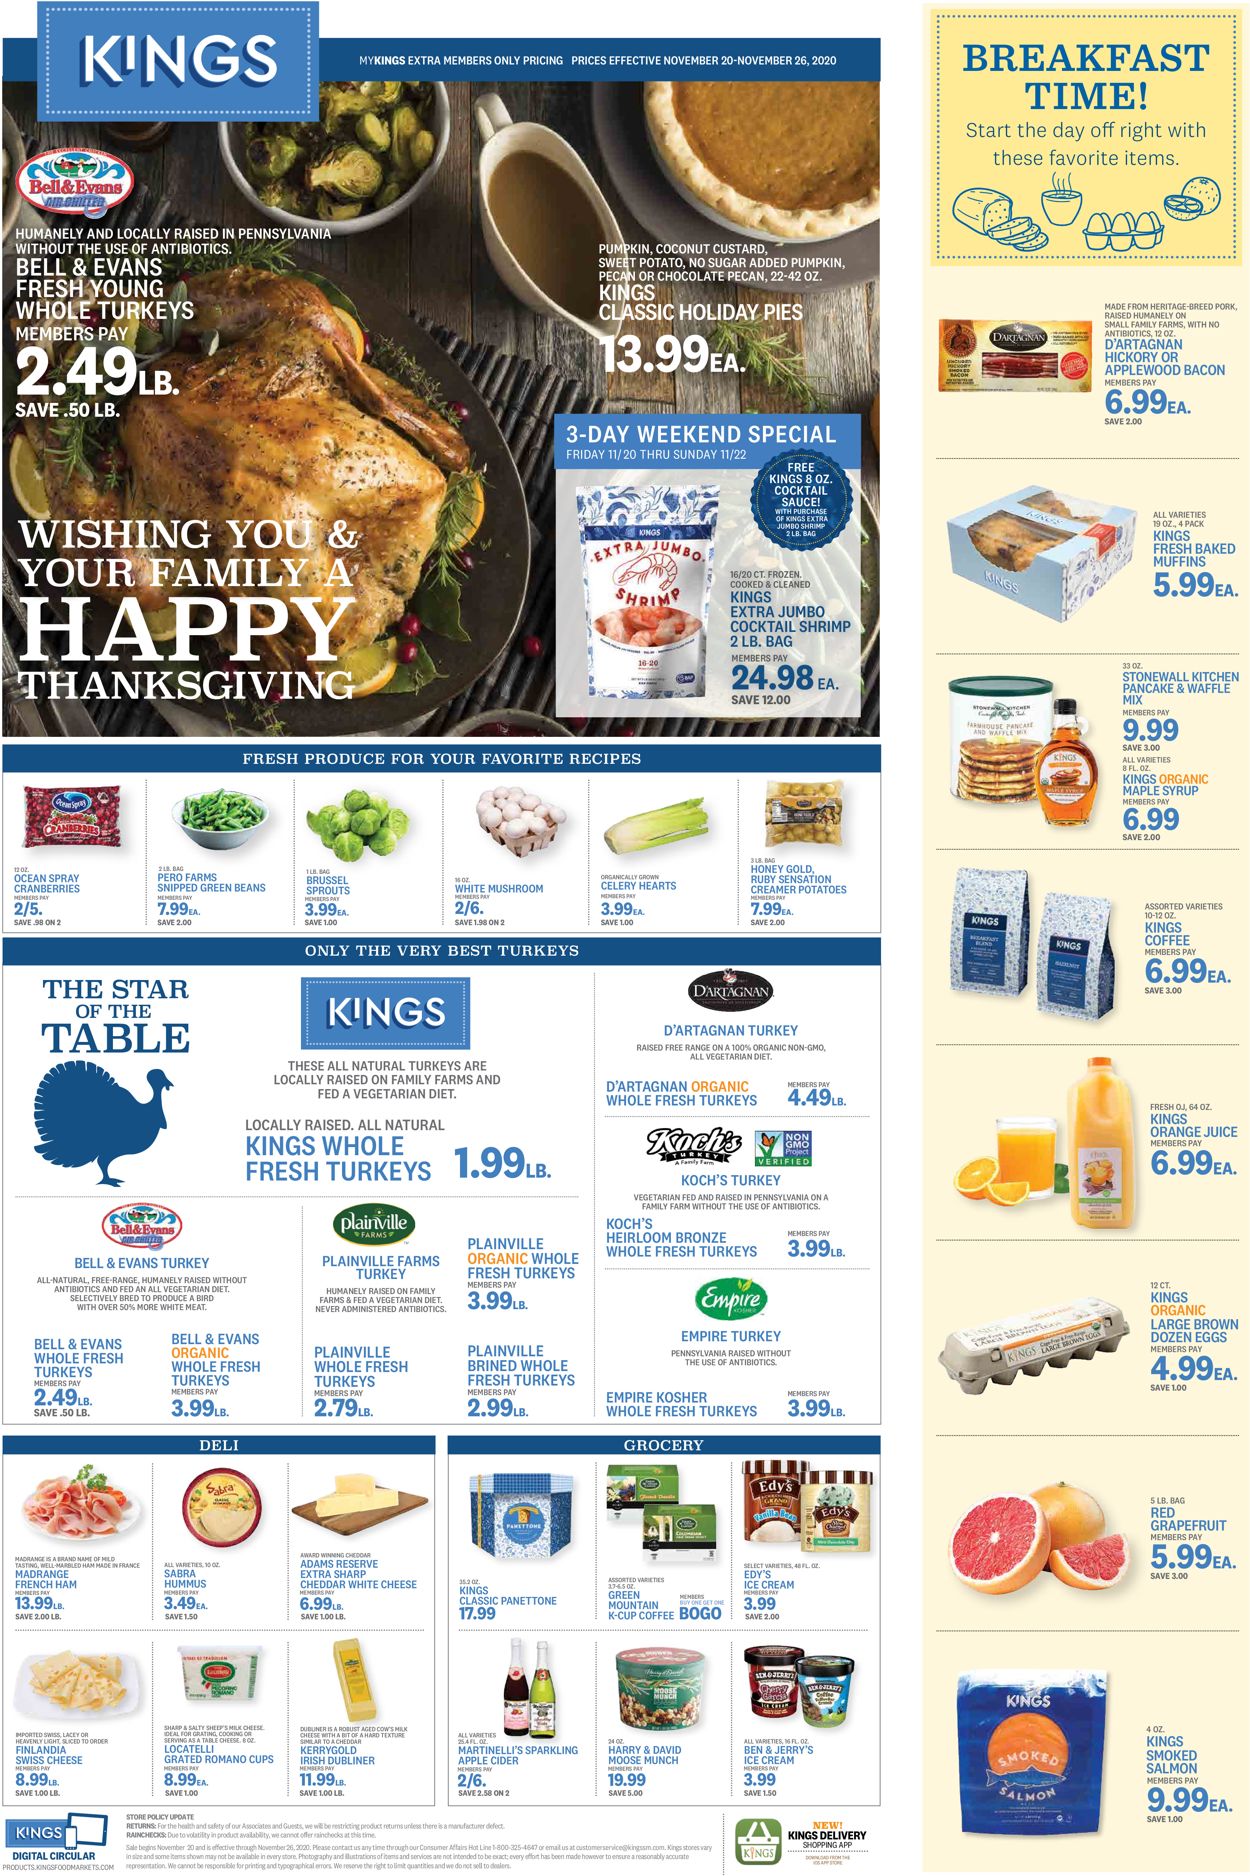 Kings Food Markets Thanksgiving 2020 Weekly Ad Circular - valid 11/20-11/26/2020